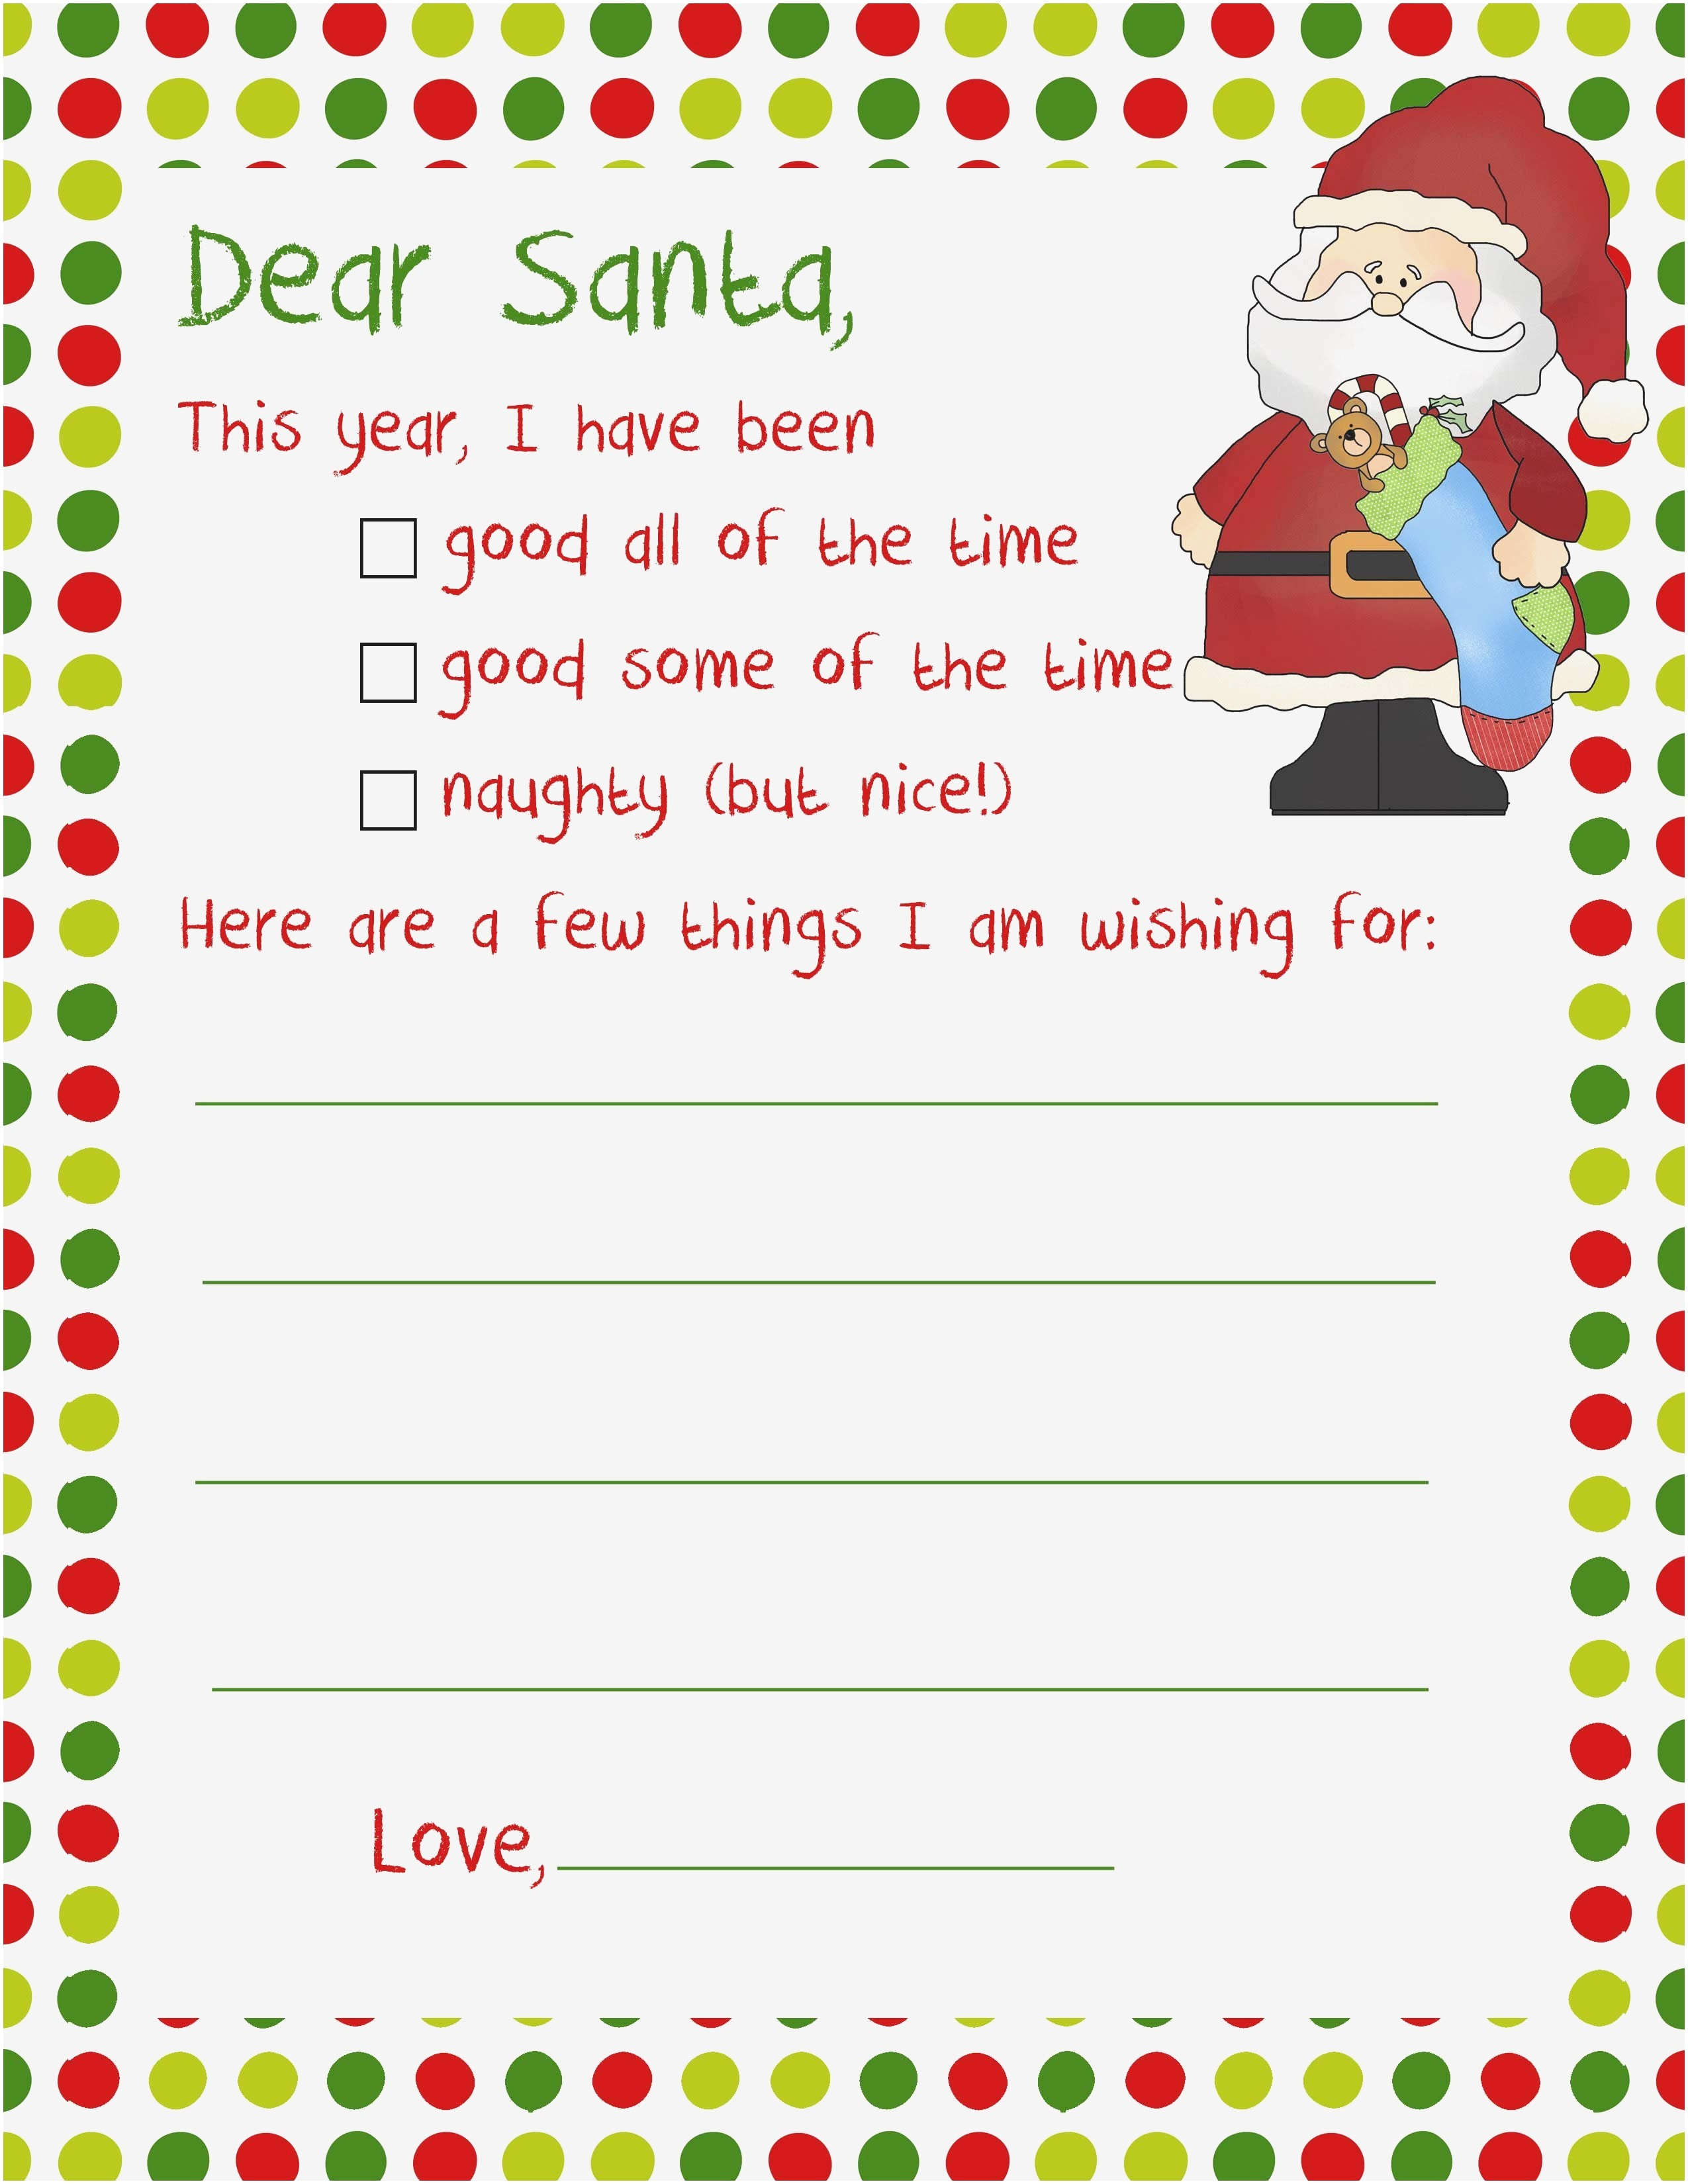 sample-santa-letter-to-child-meme-reddit